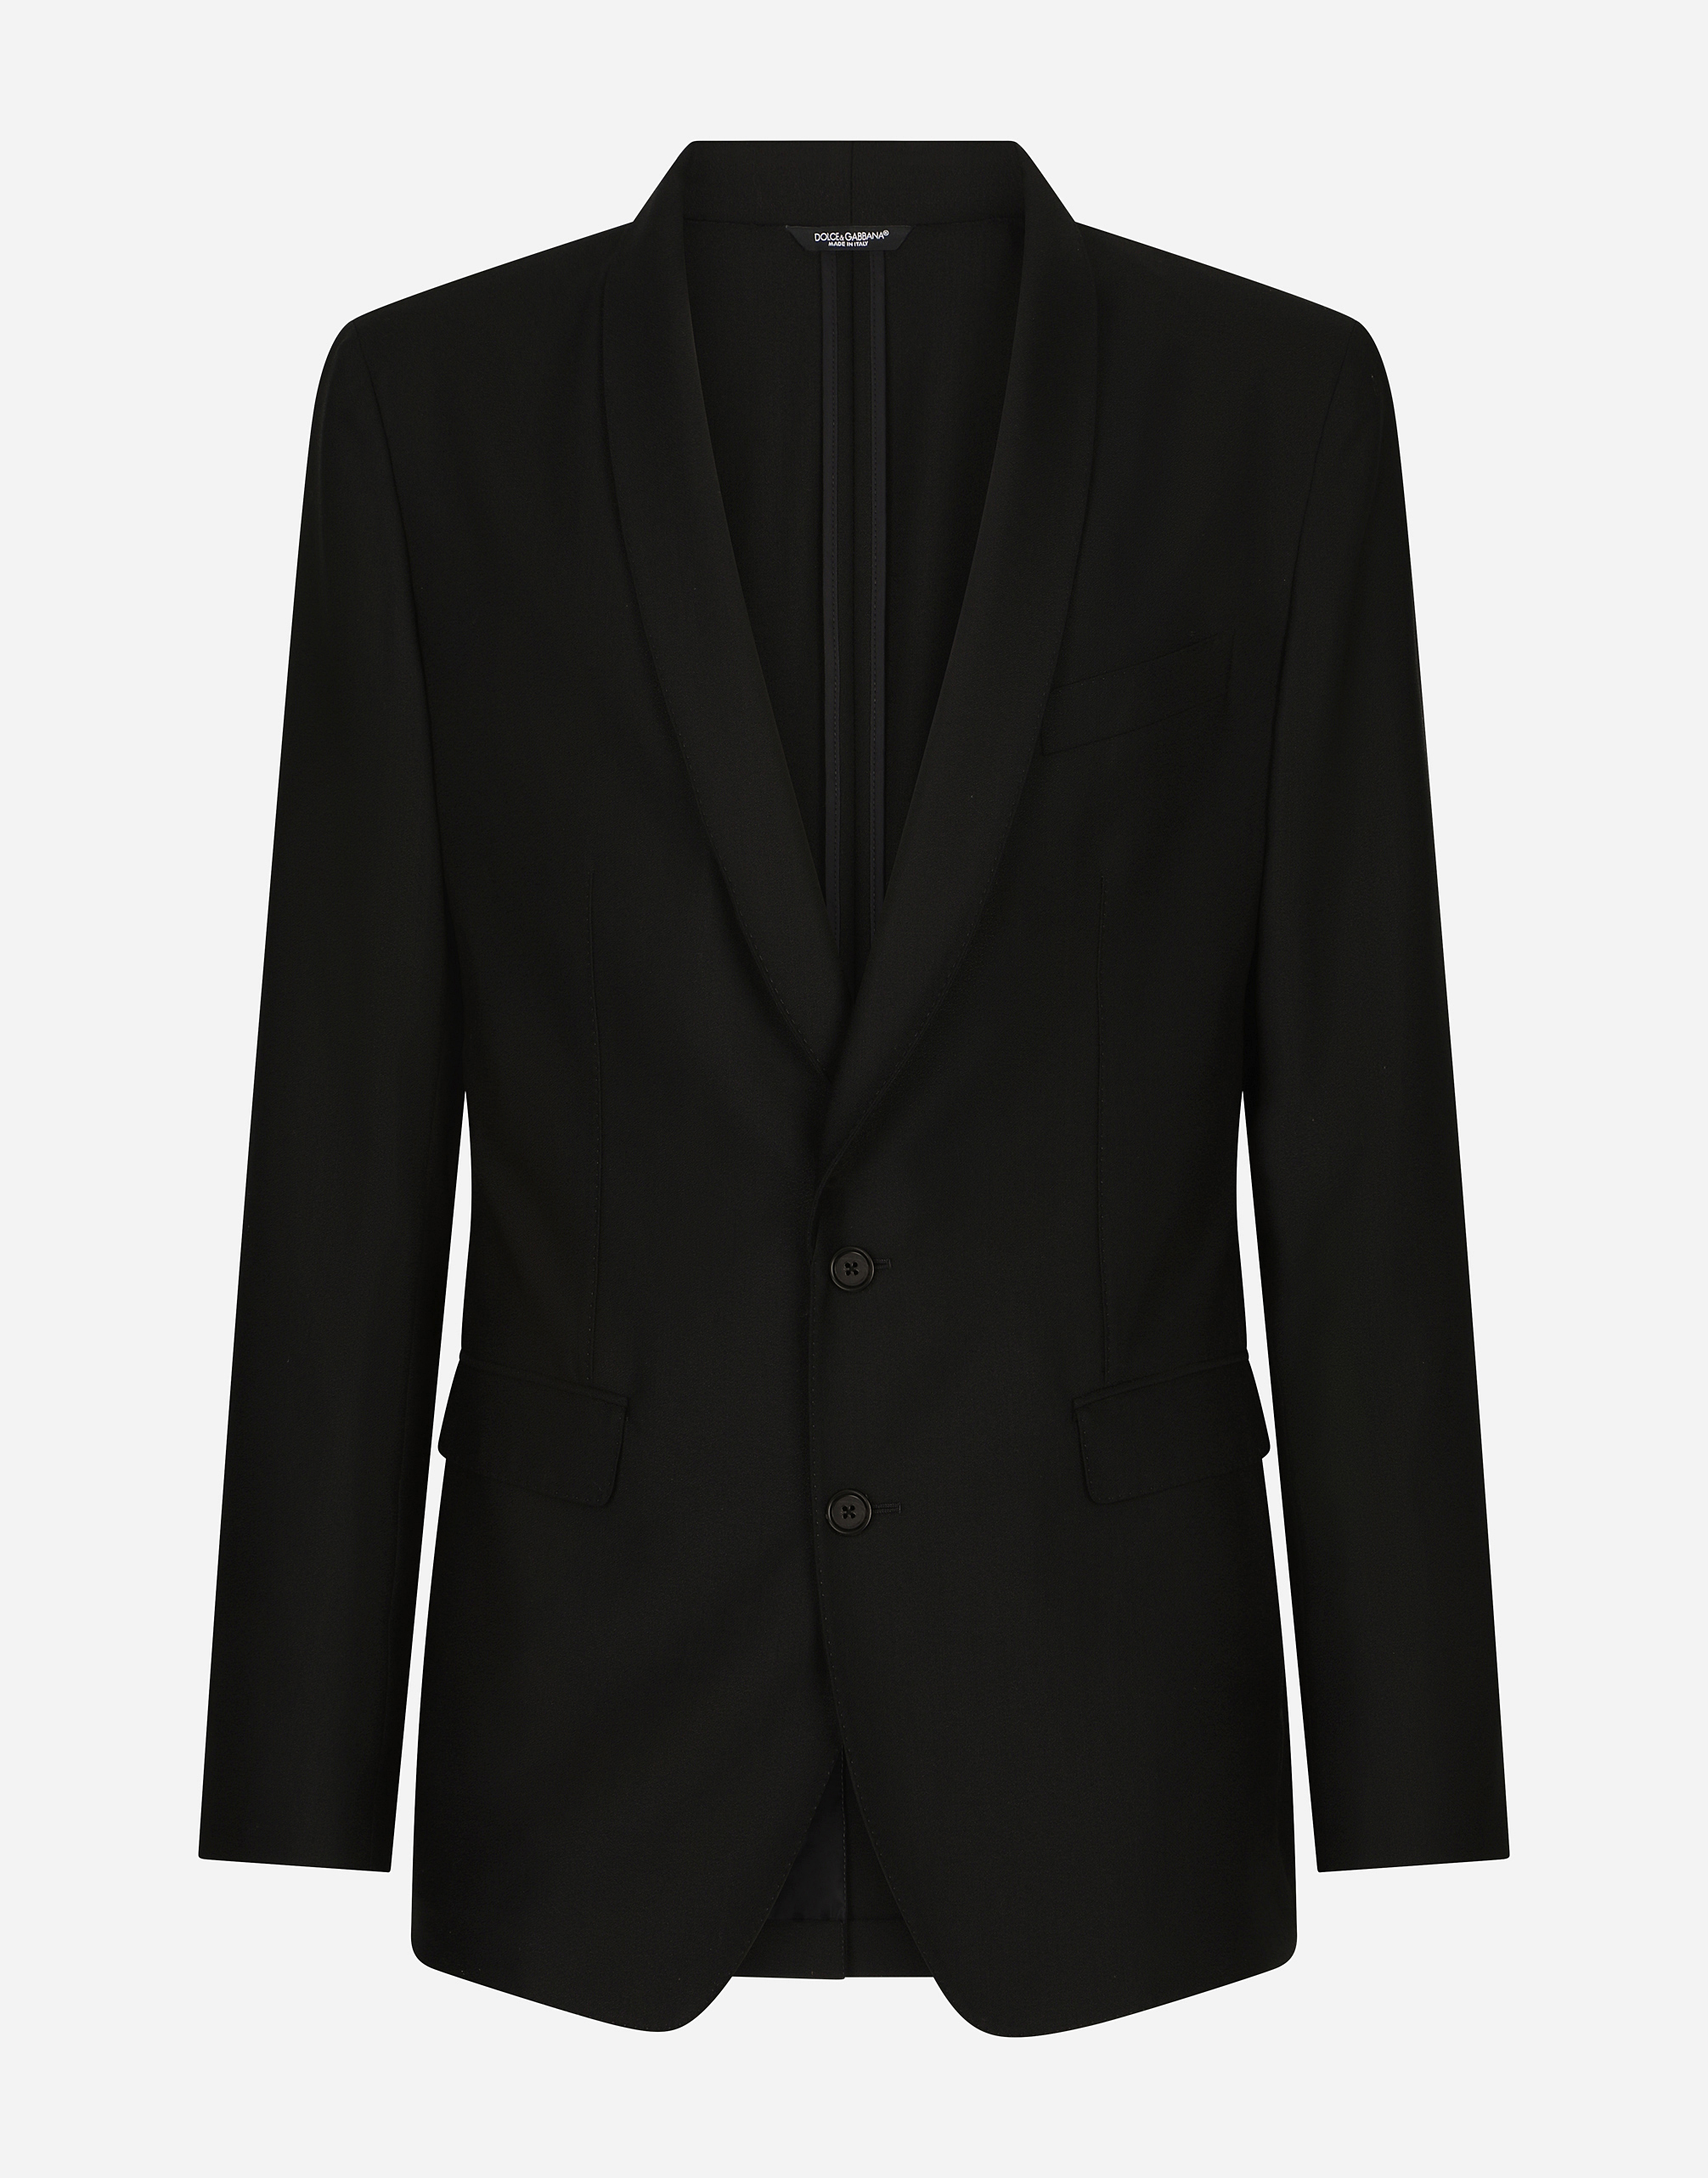 Wool sable Taormina jacket in Black